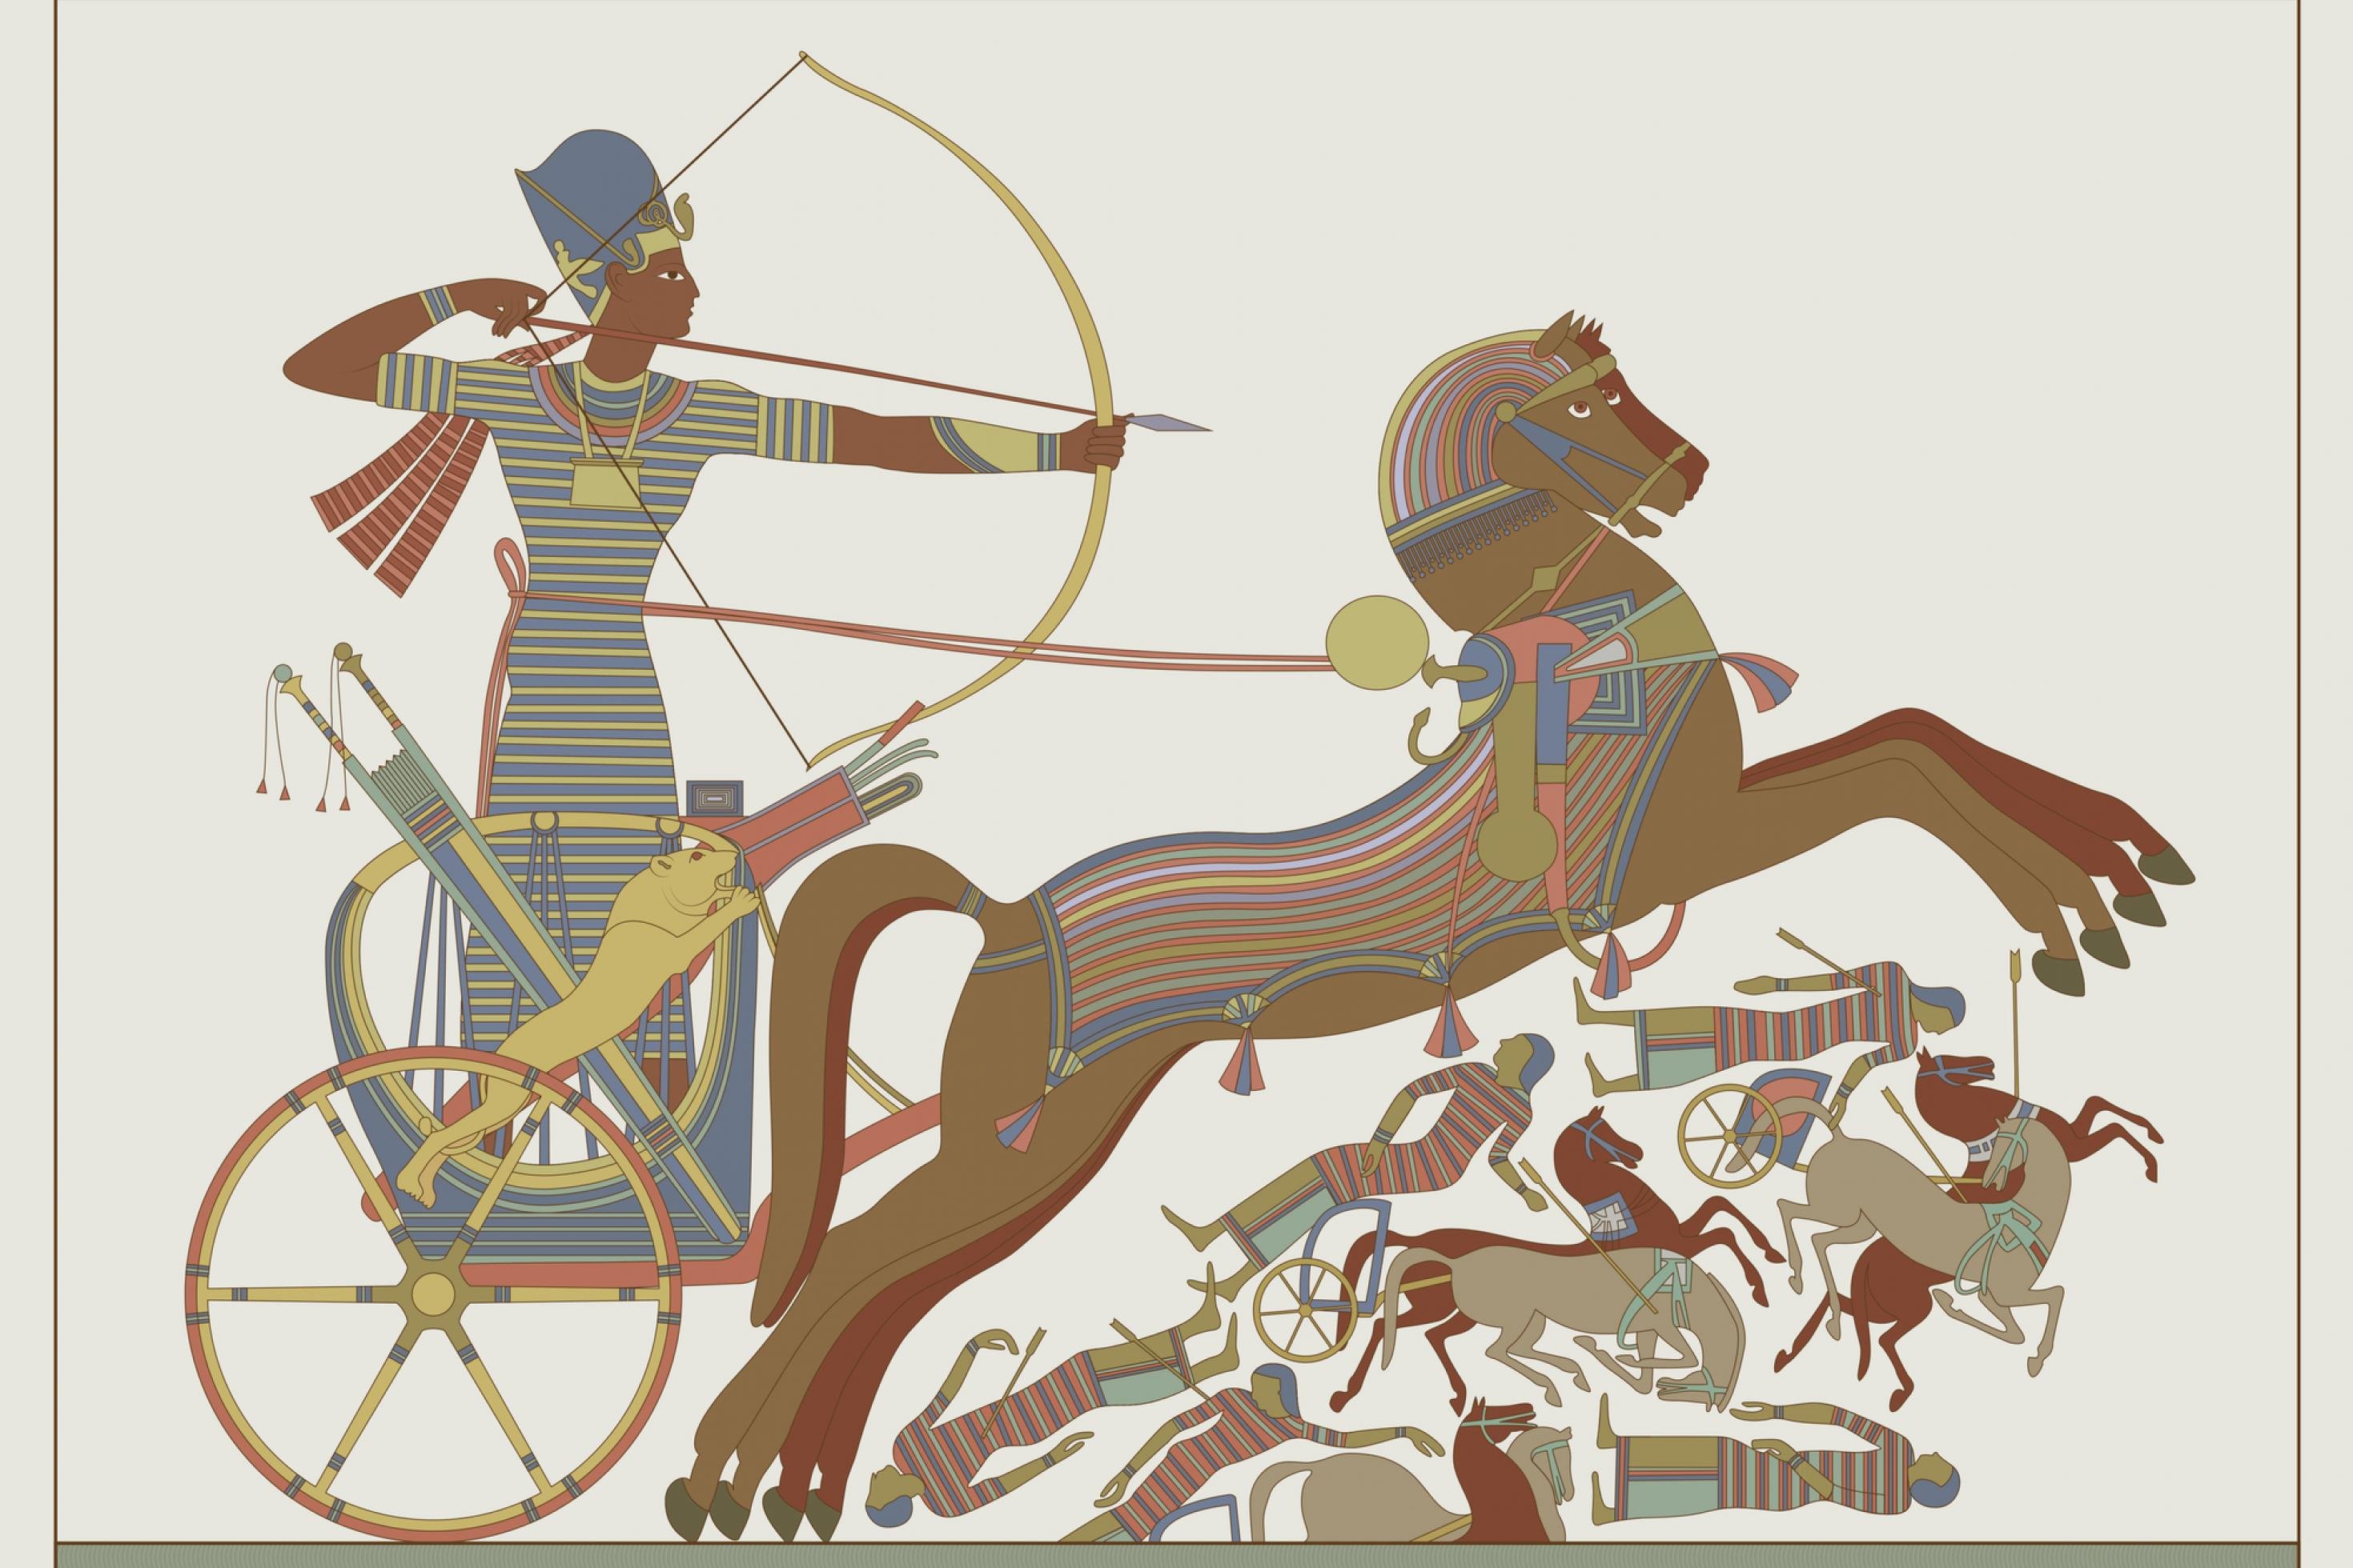 Das Fresko Zeigt Pharao Ramses in einer Schlacht.